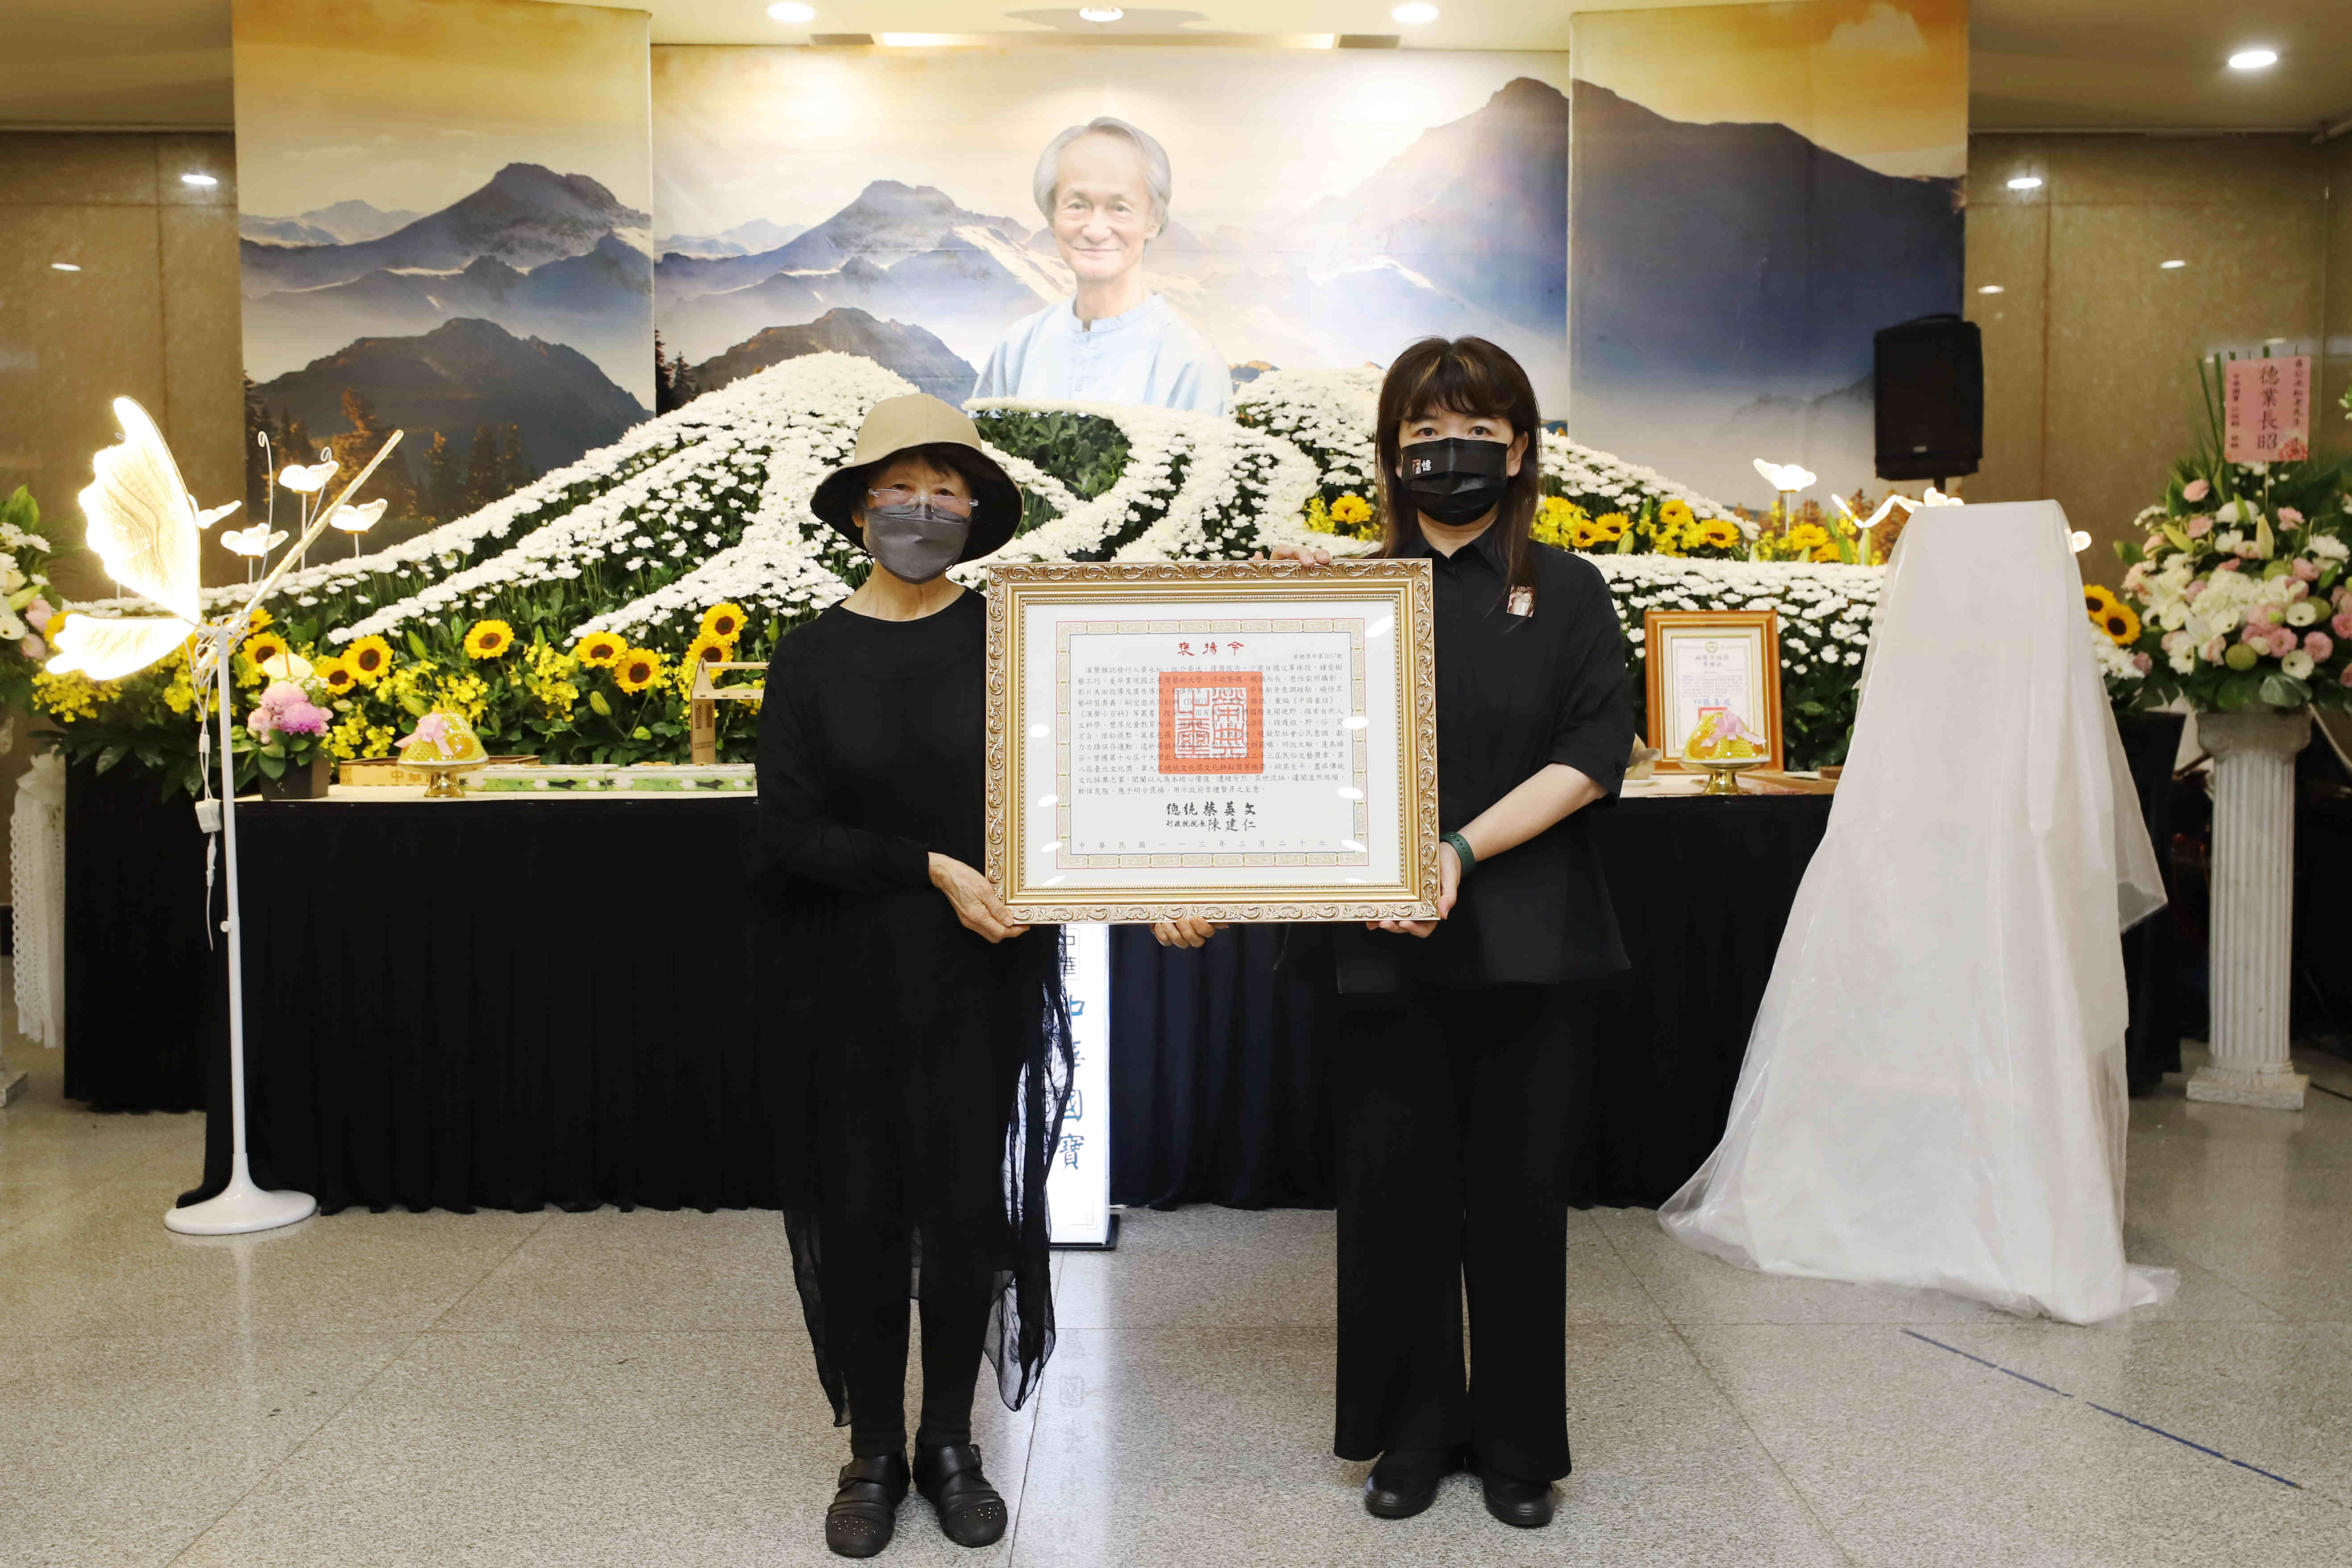 文化部政务次长李静慧（右）代表颁赠总统褒扬令，由黄永松夫人李南华女士（左）代表受赠。图/文化部提供